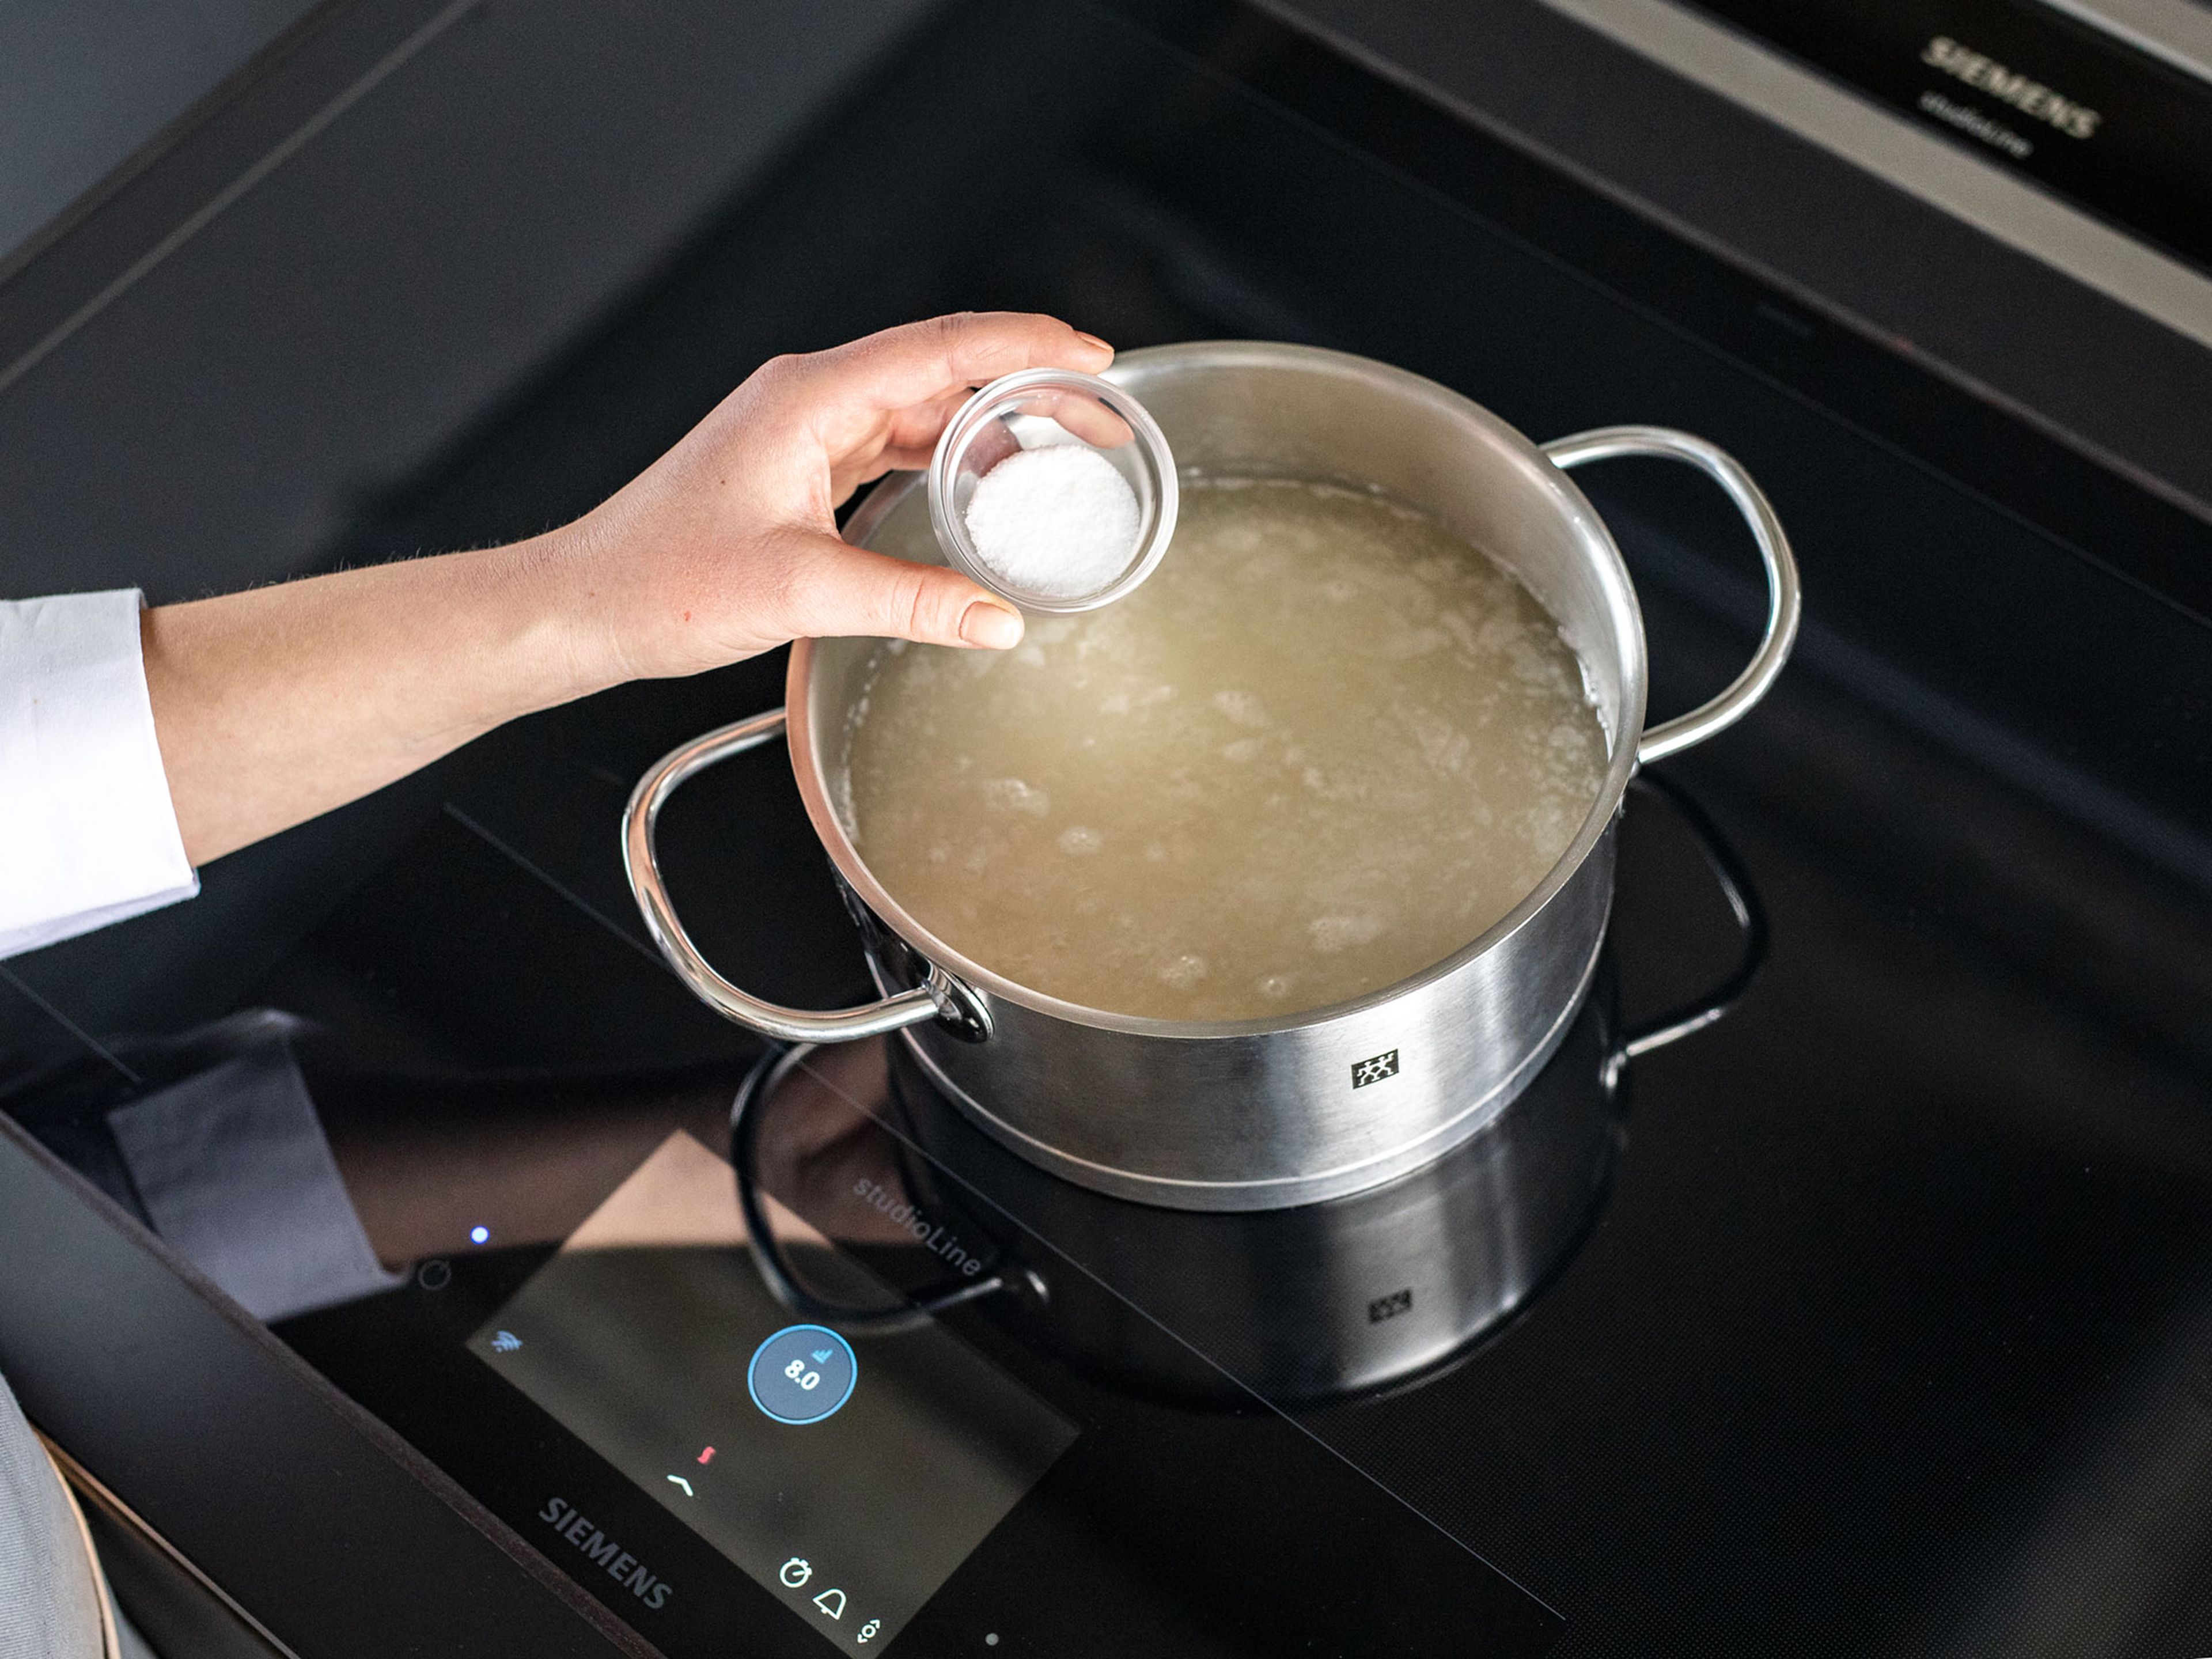 Basmatireis abspülen und in einen Topf mit kaltem, gesalzenem Wasser geben. Zum Kochen bringen und für ca. 5 Min. köcheln lassen. Anschließend das Wasser abgießen.